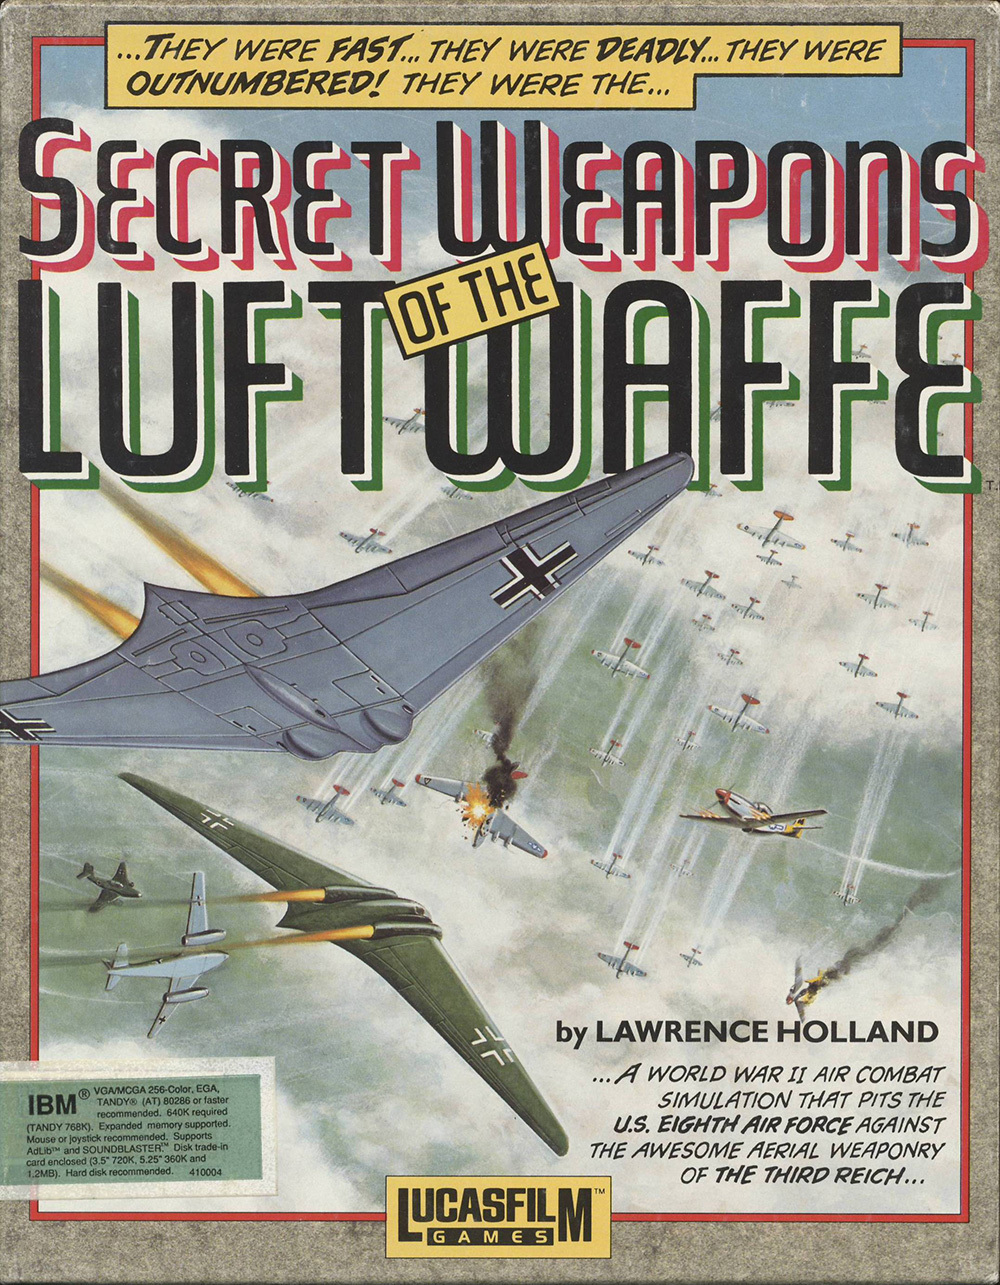 jaquette du jeu vidéo Secret Weapons of the Luftwaffe